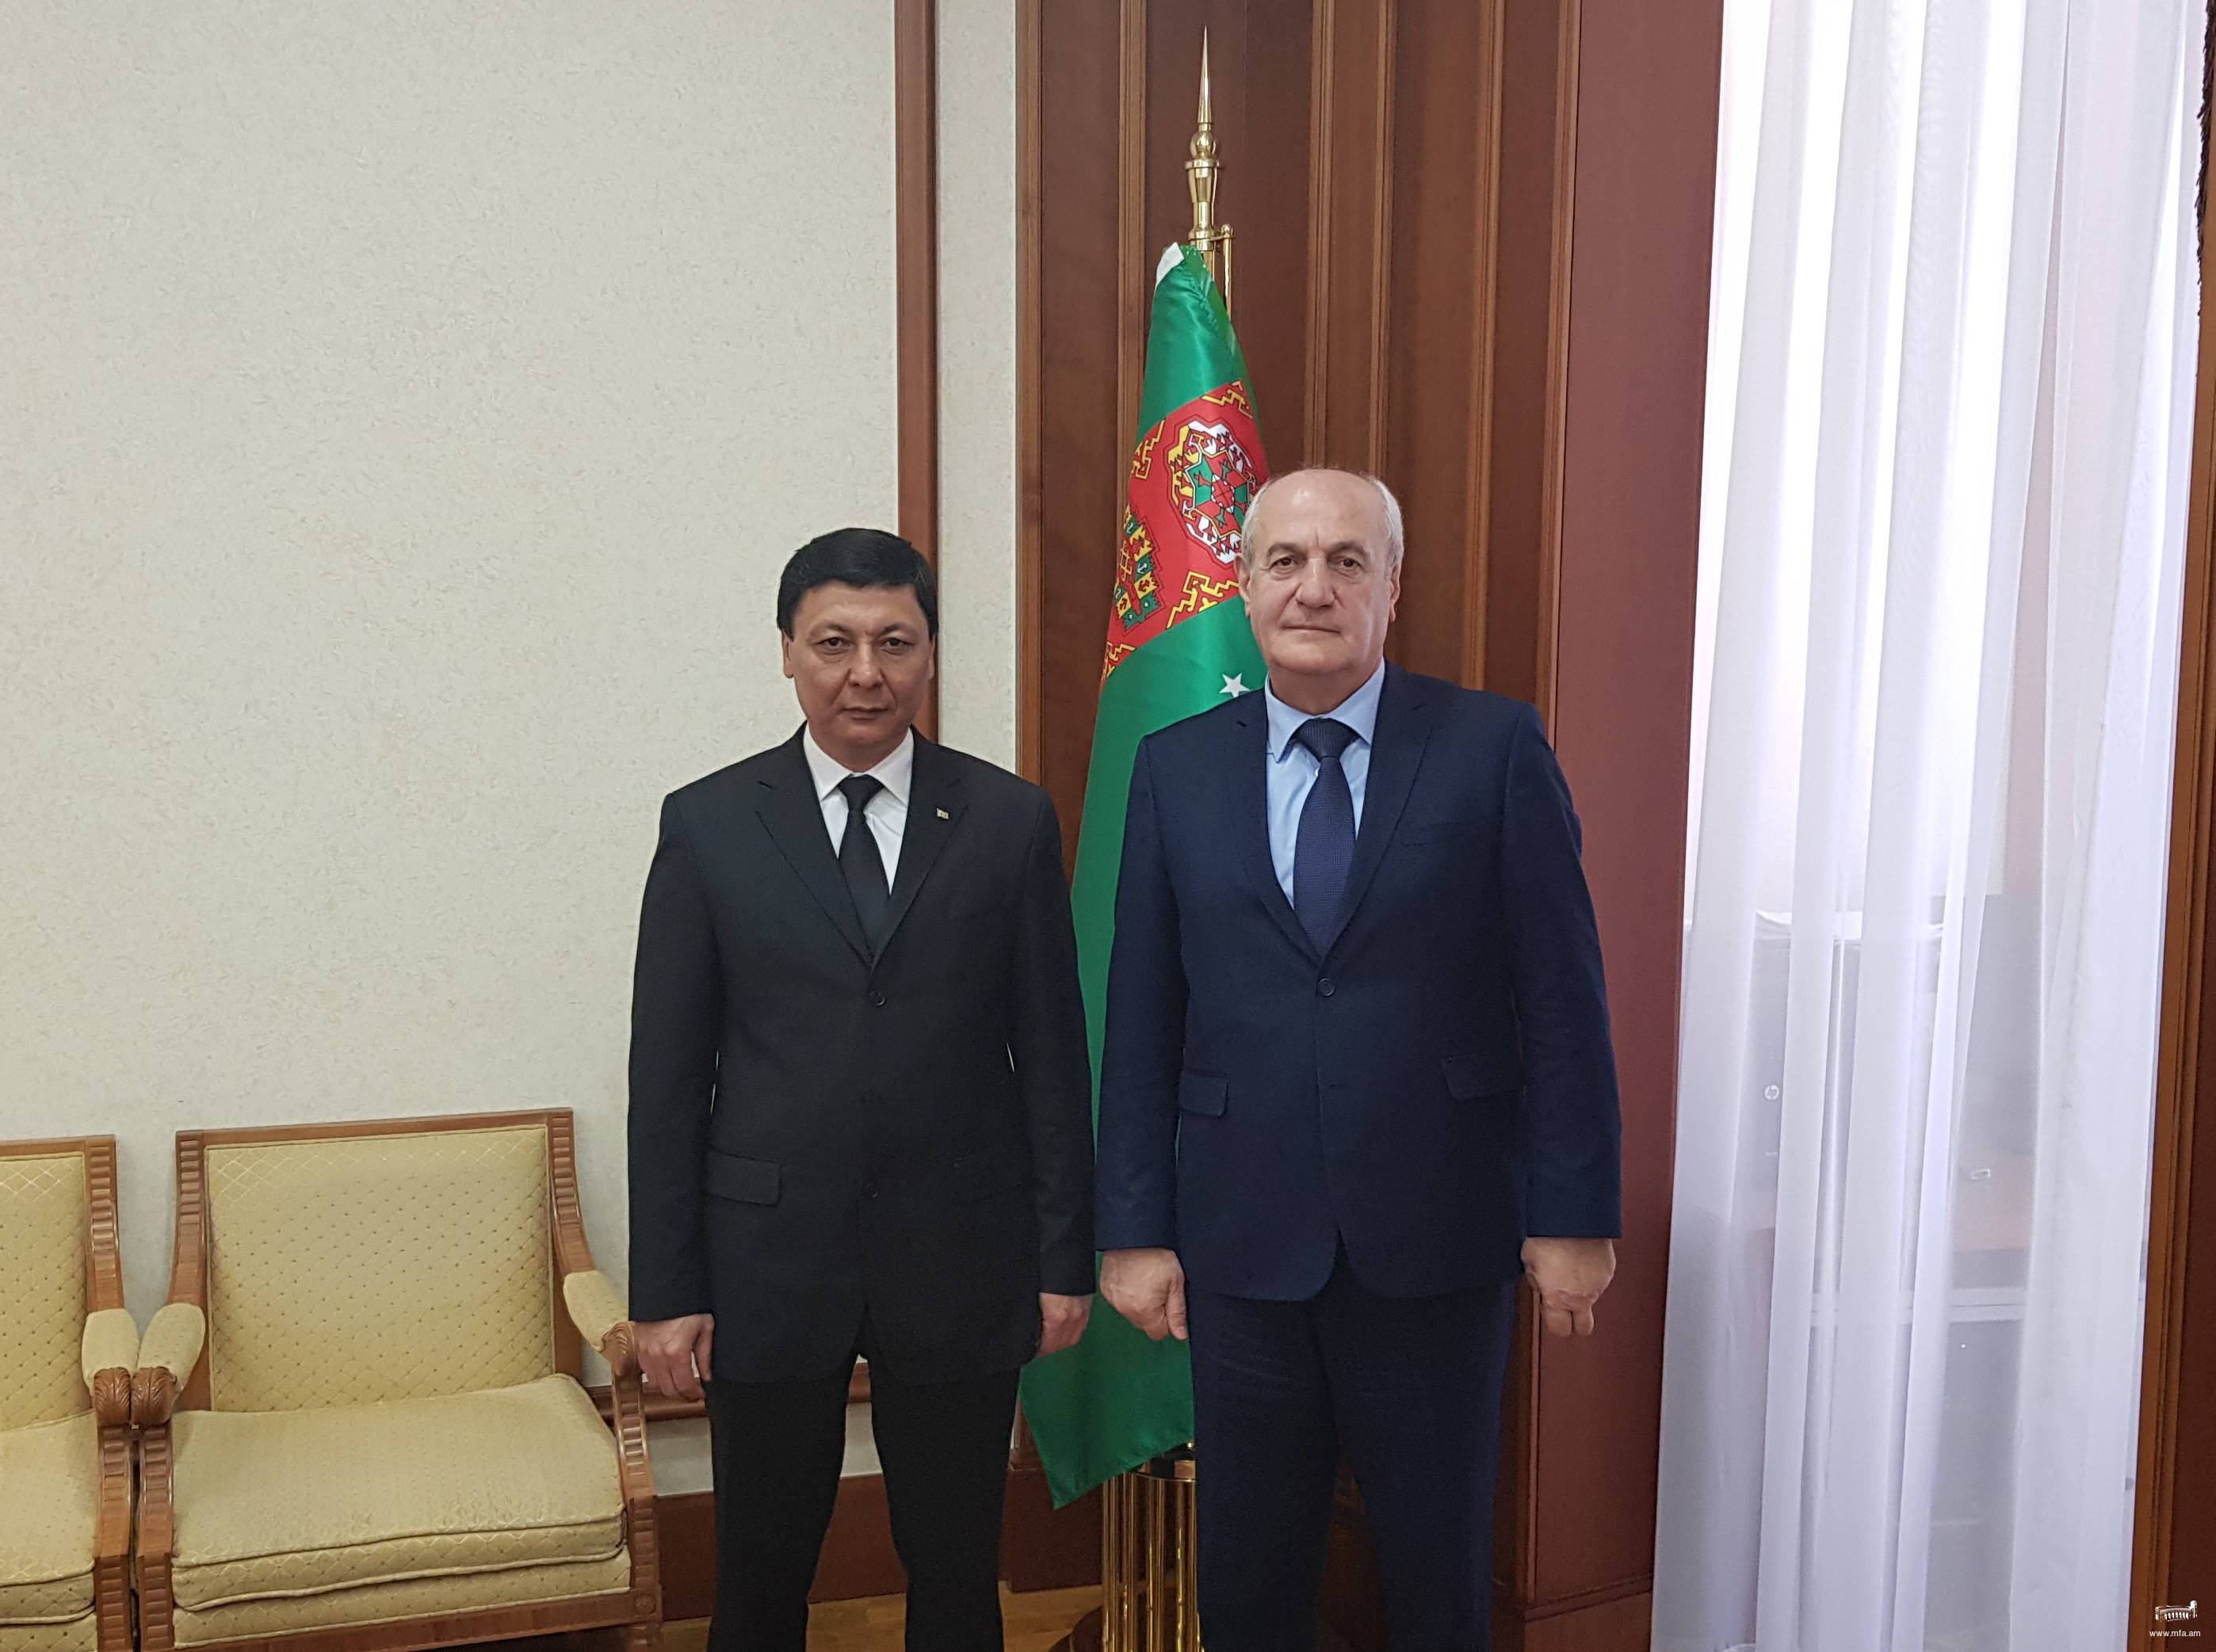 Դեսպան Գառնիկ Բադալյանի հանդիպումը Թուրքմենստանի ֆինանսների և էկոնոմիկայի նախարար